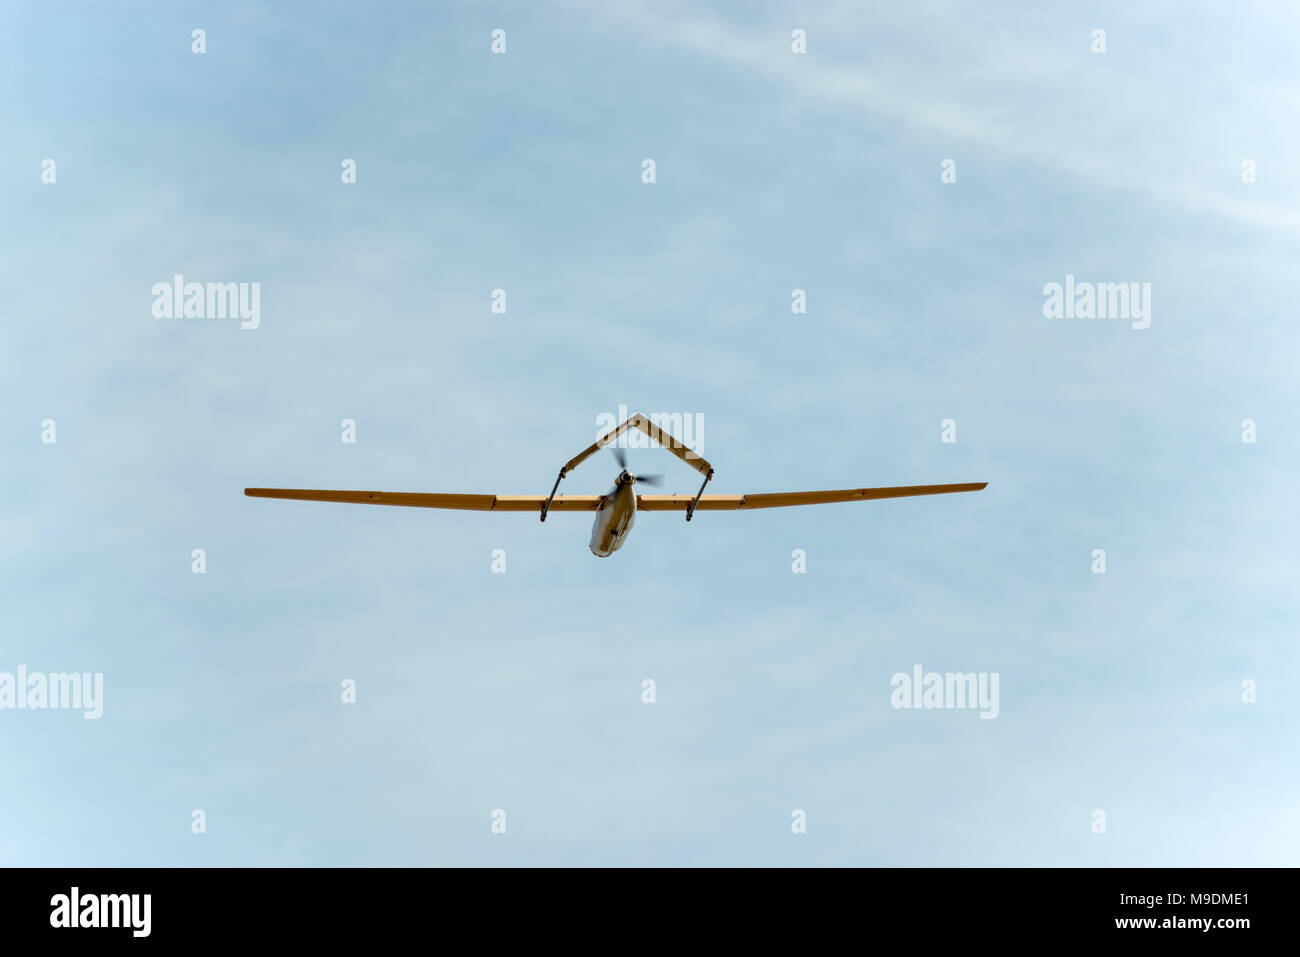 Prototipo de drone de ala fija Foto de stock